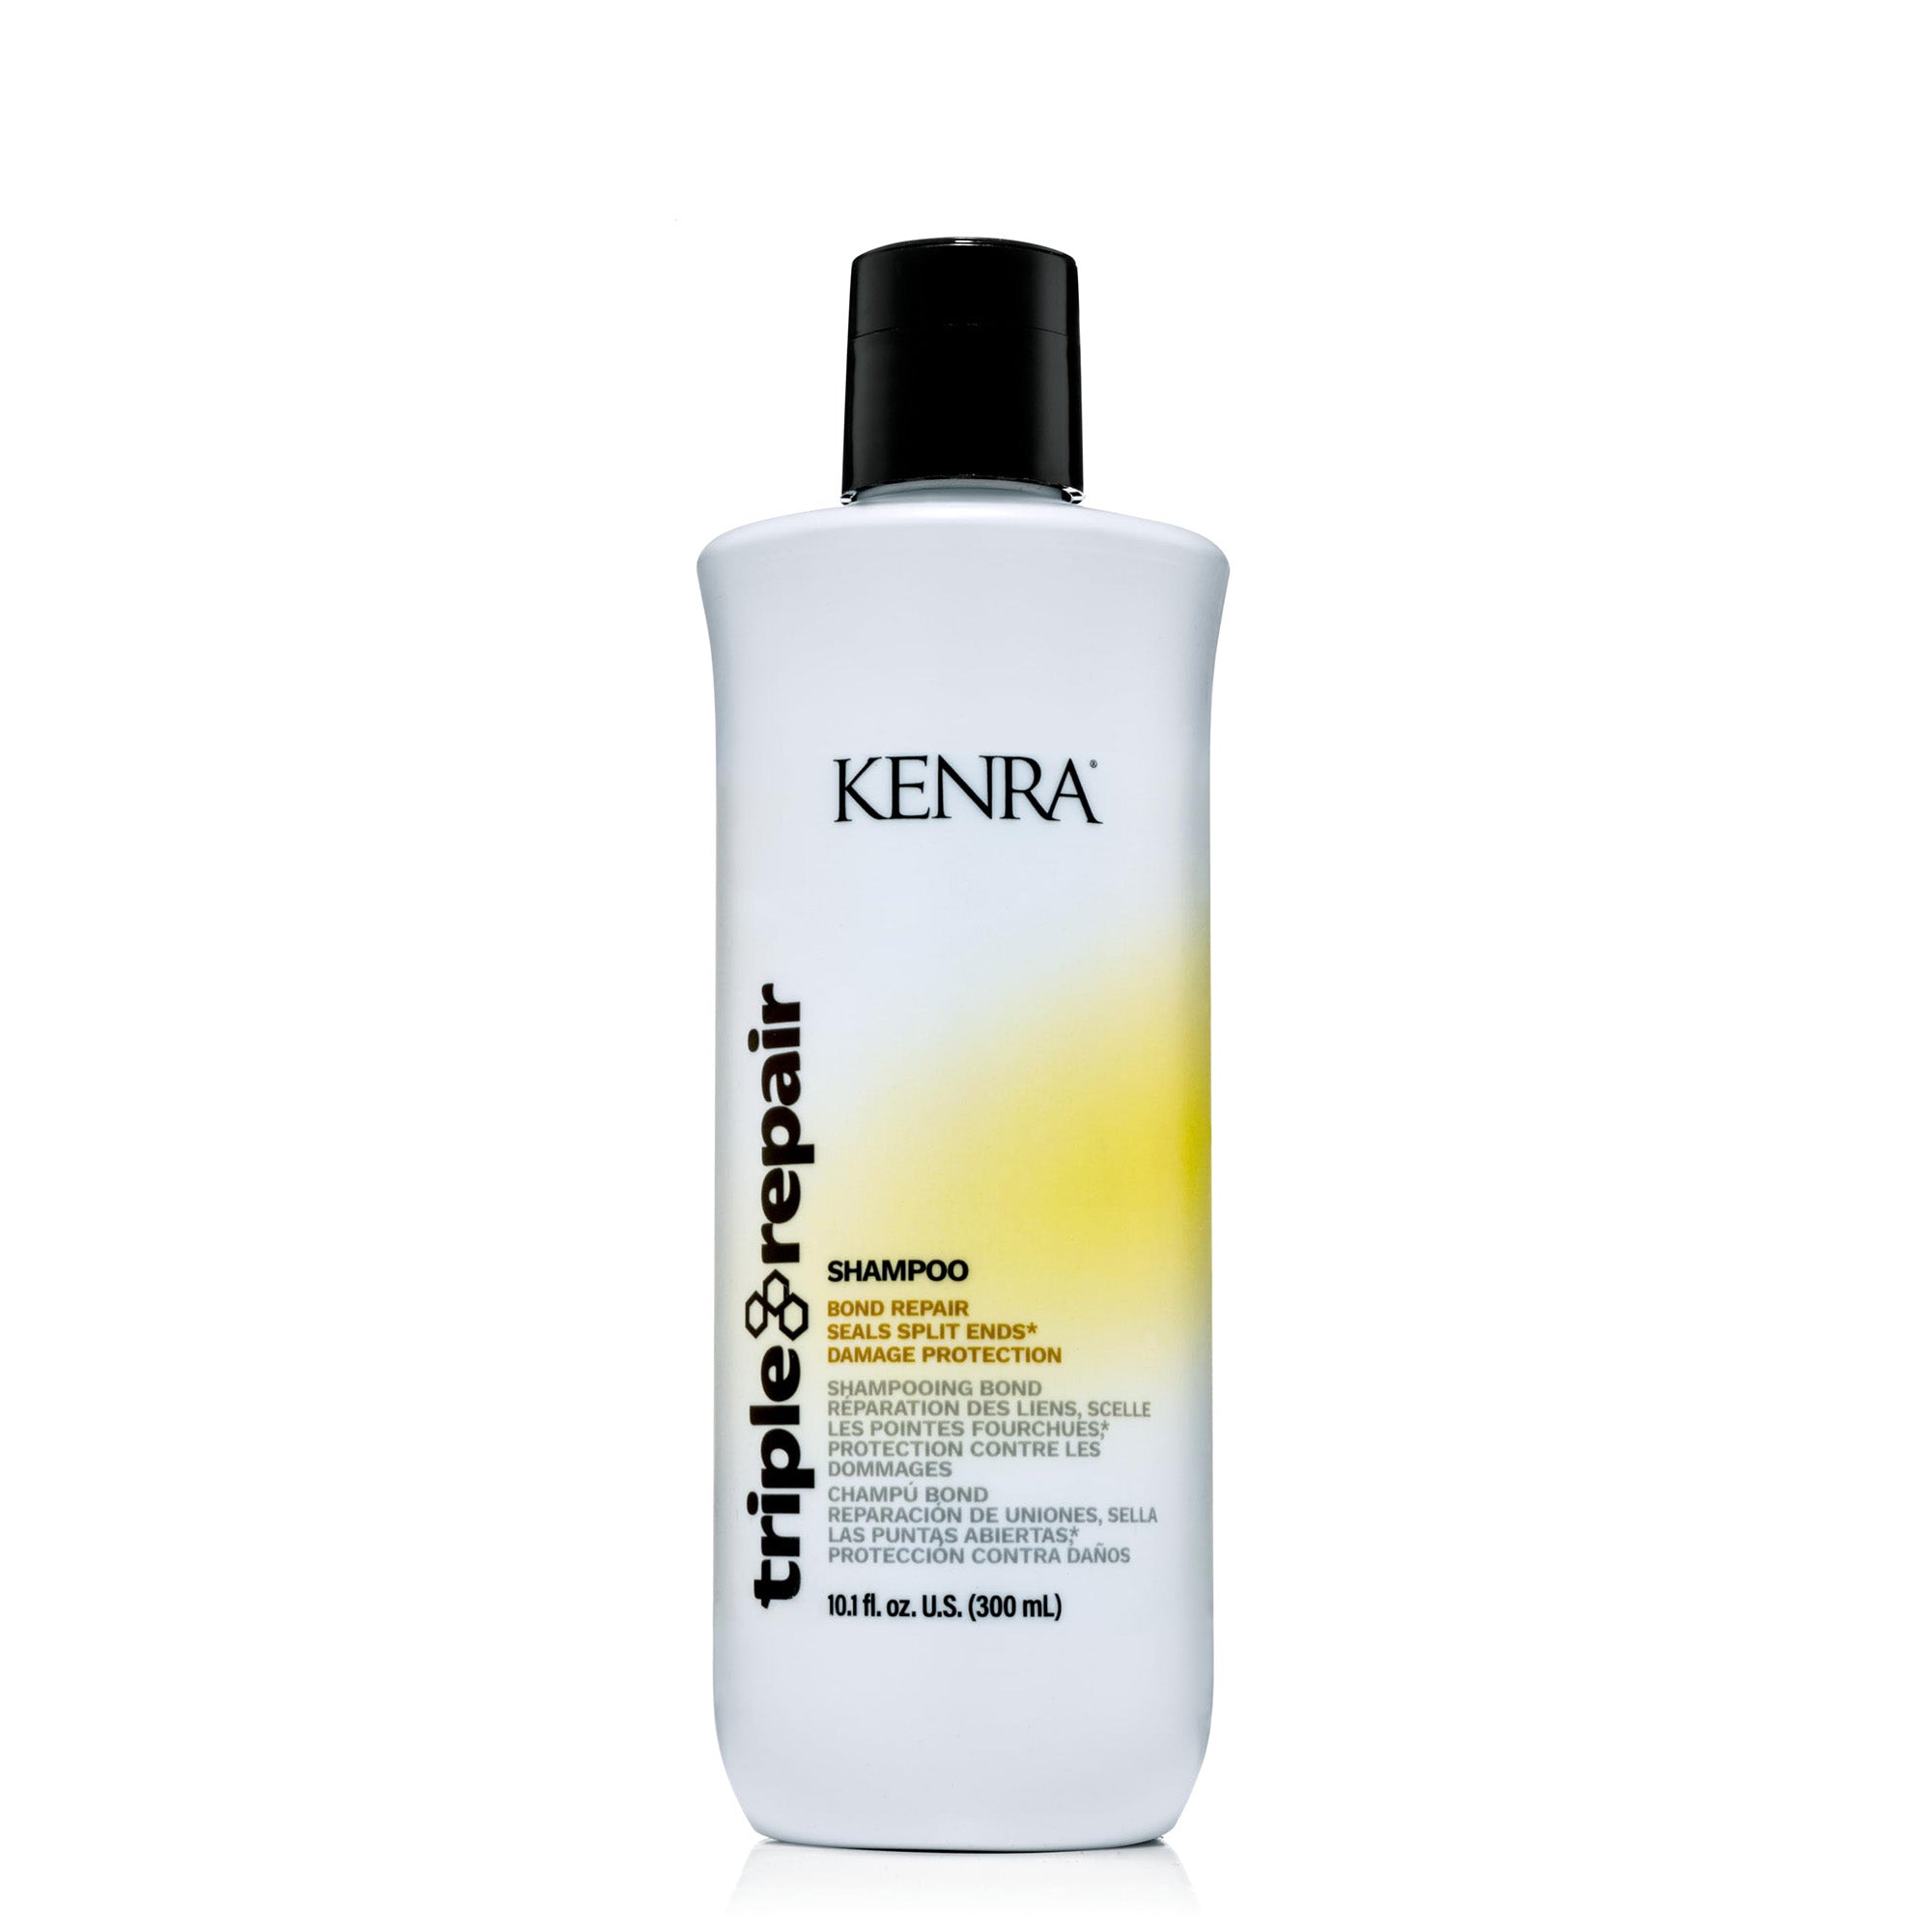 Kenra Professional Triple Bond Repair Shampoo Planet Beauty